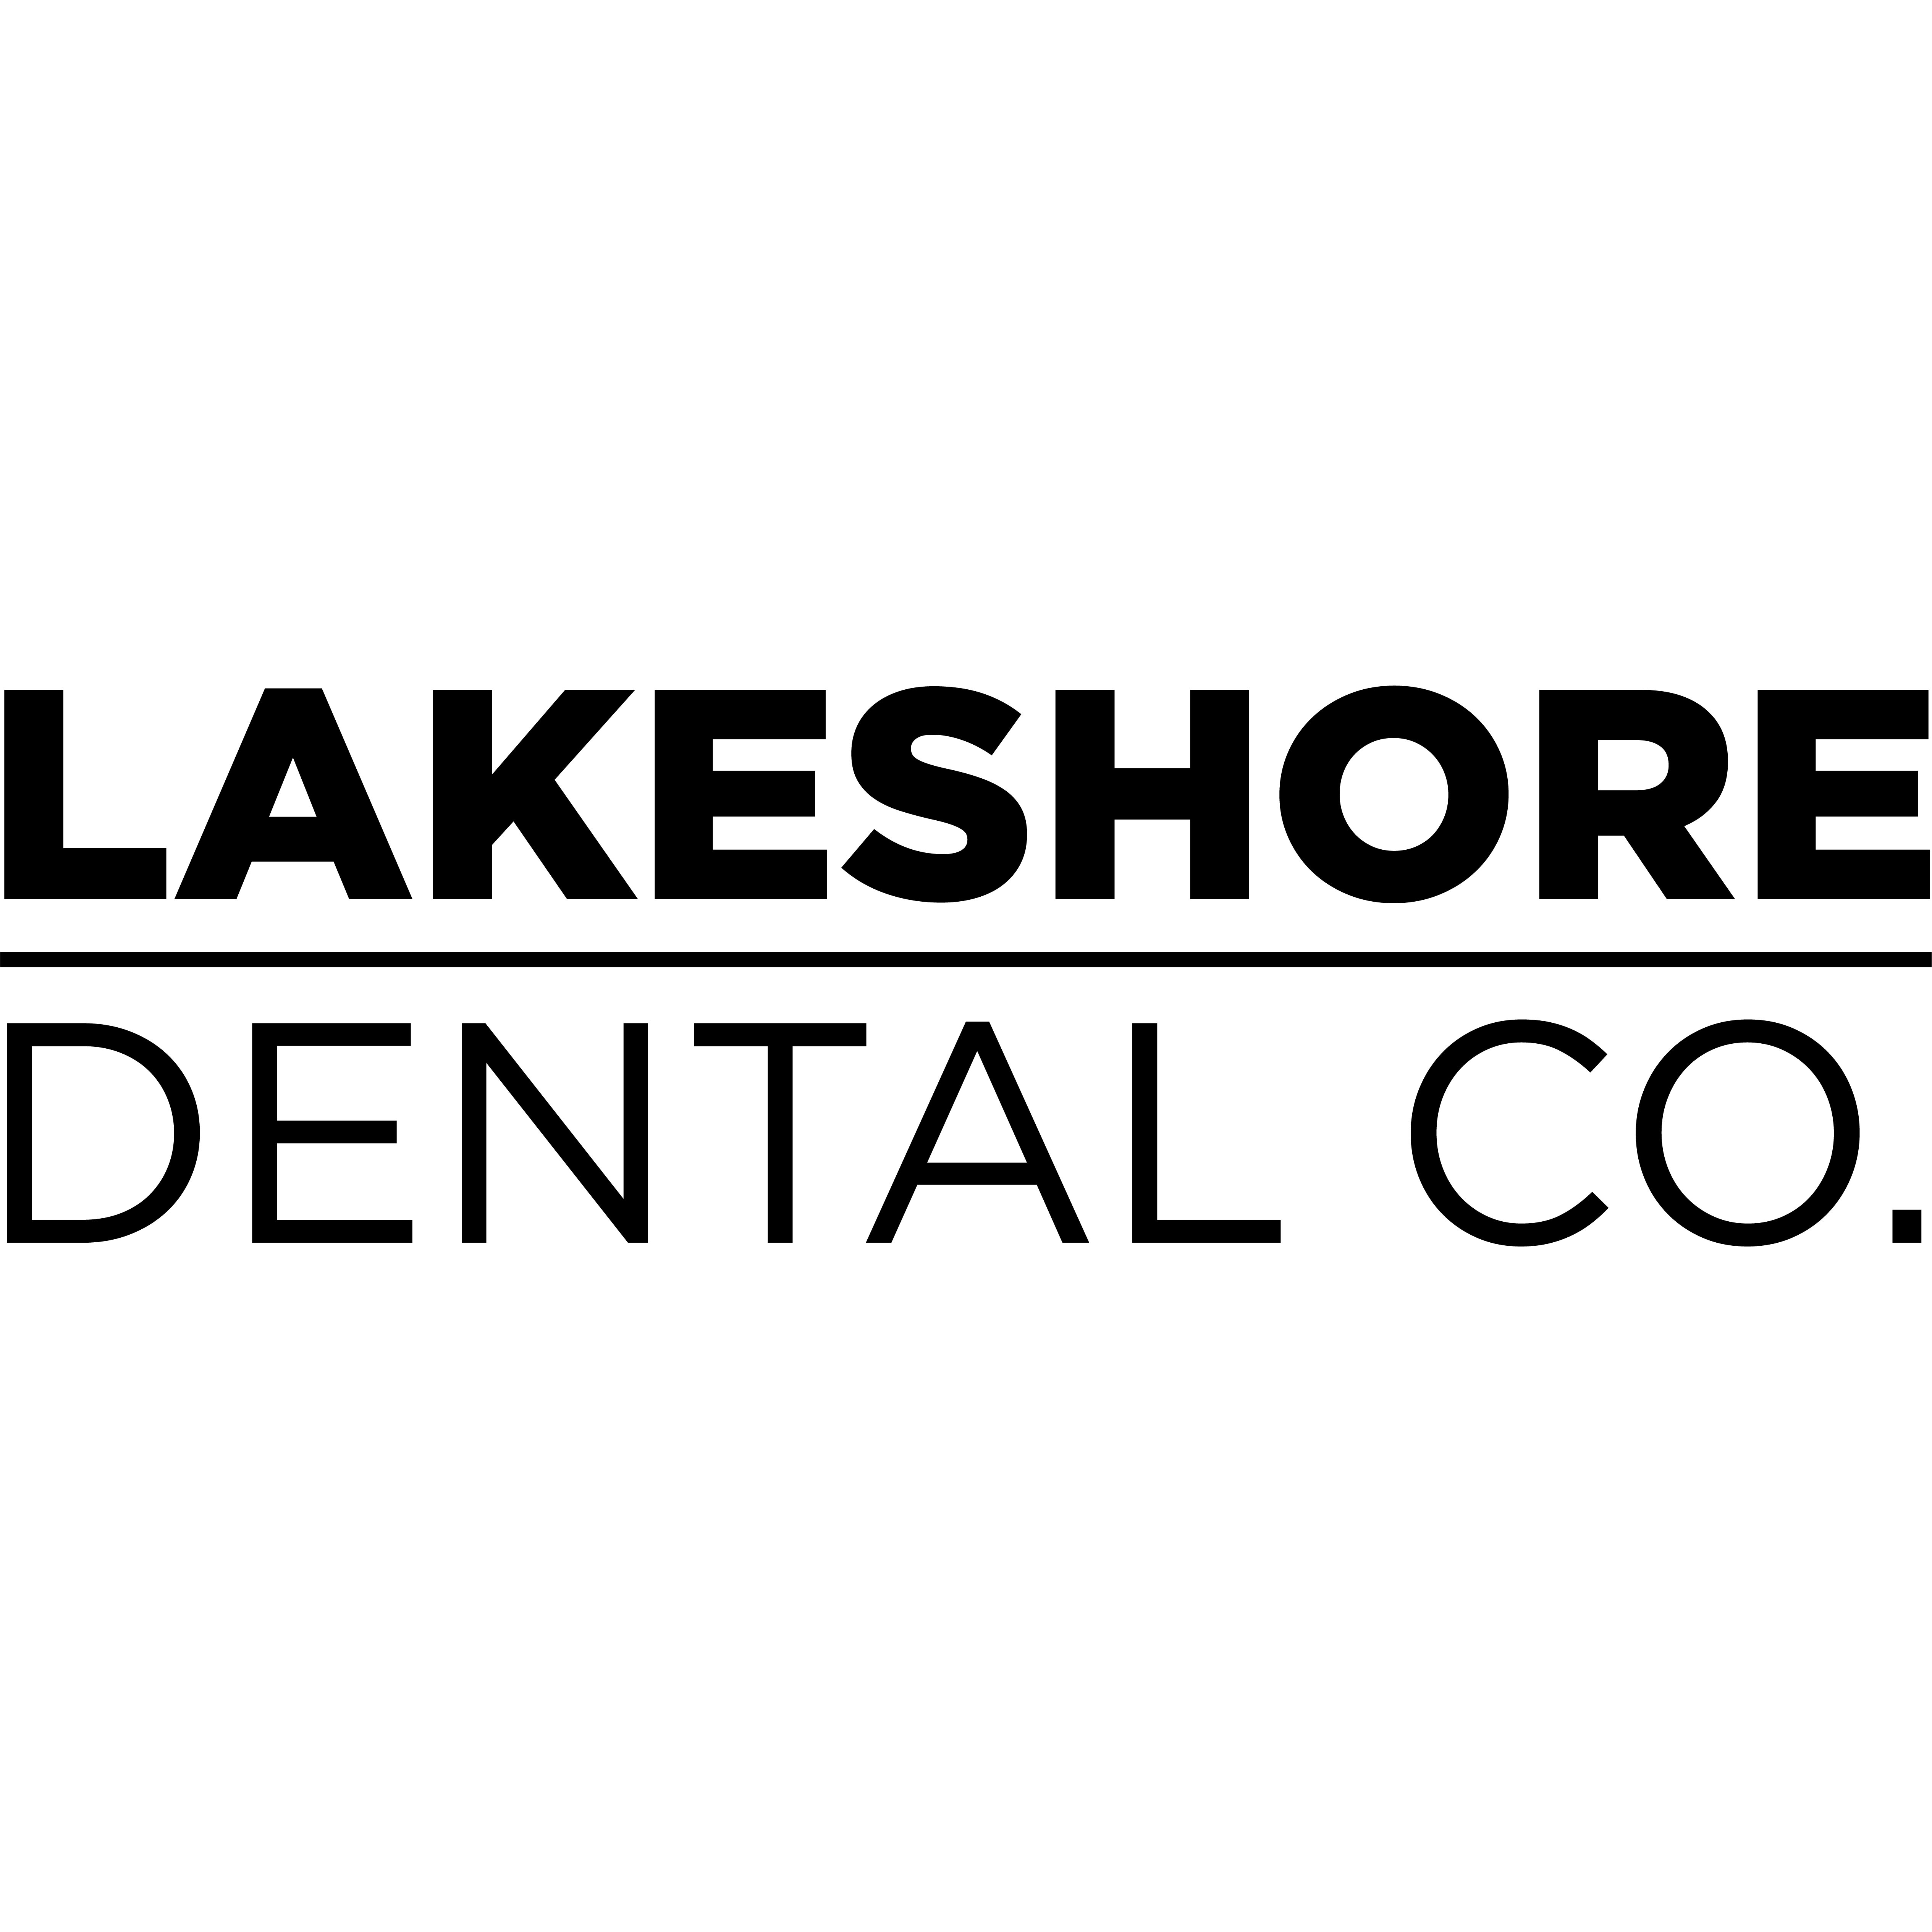 Lakeshore Dental Co.